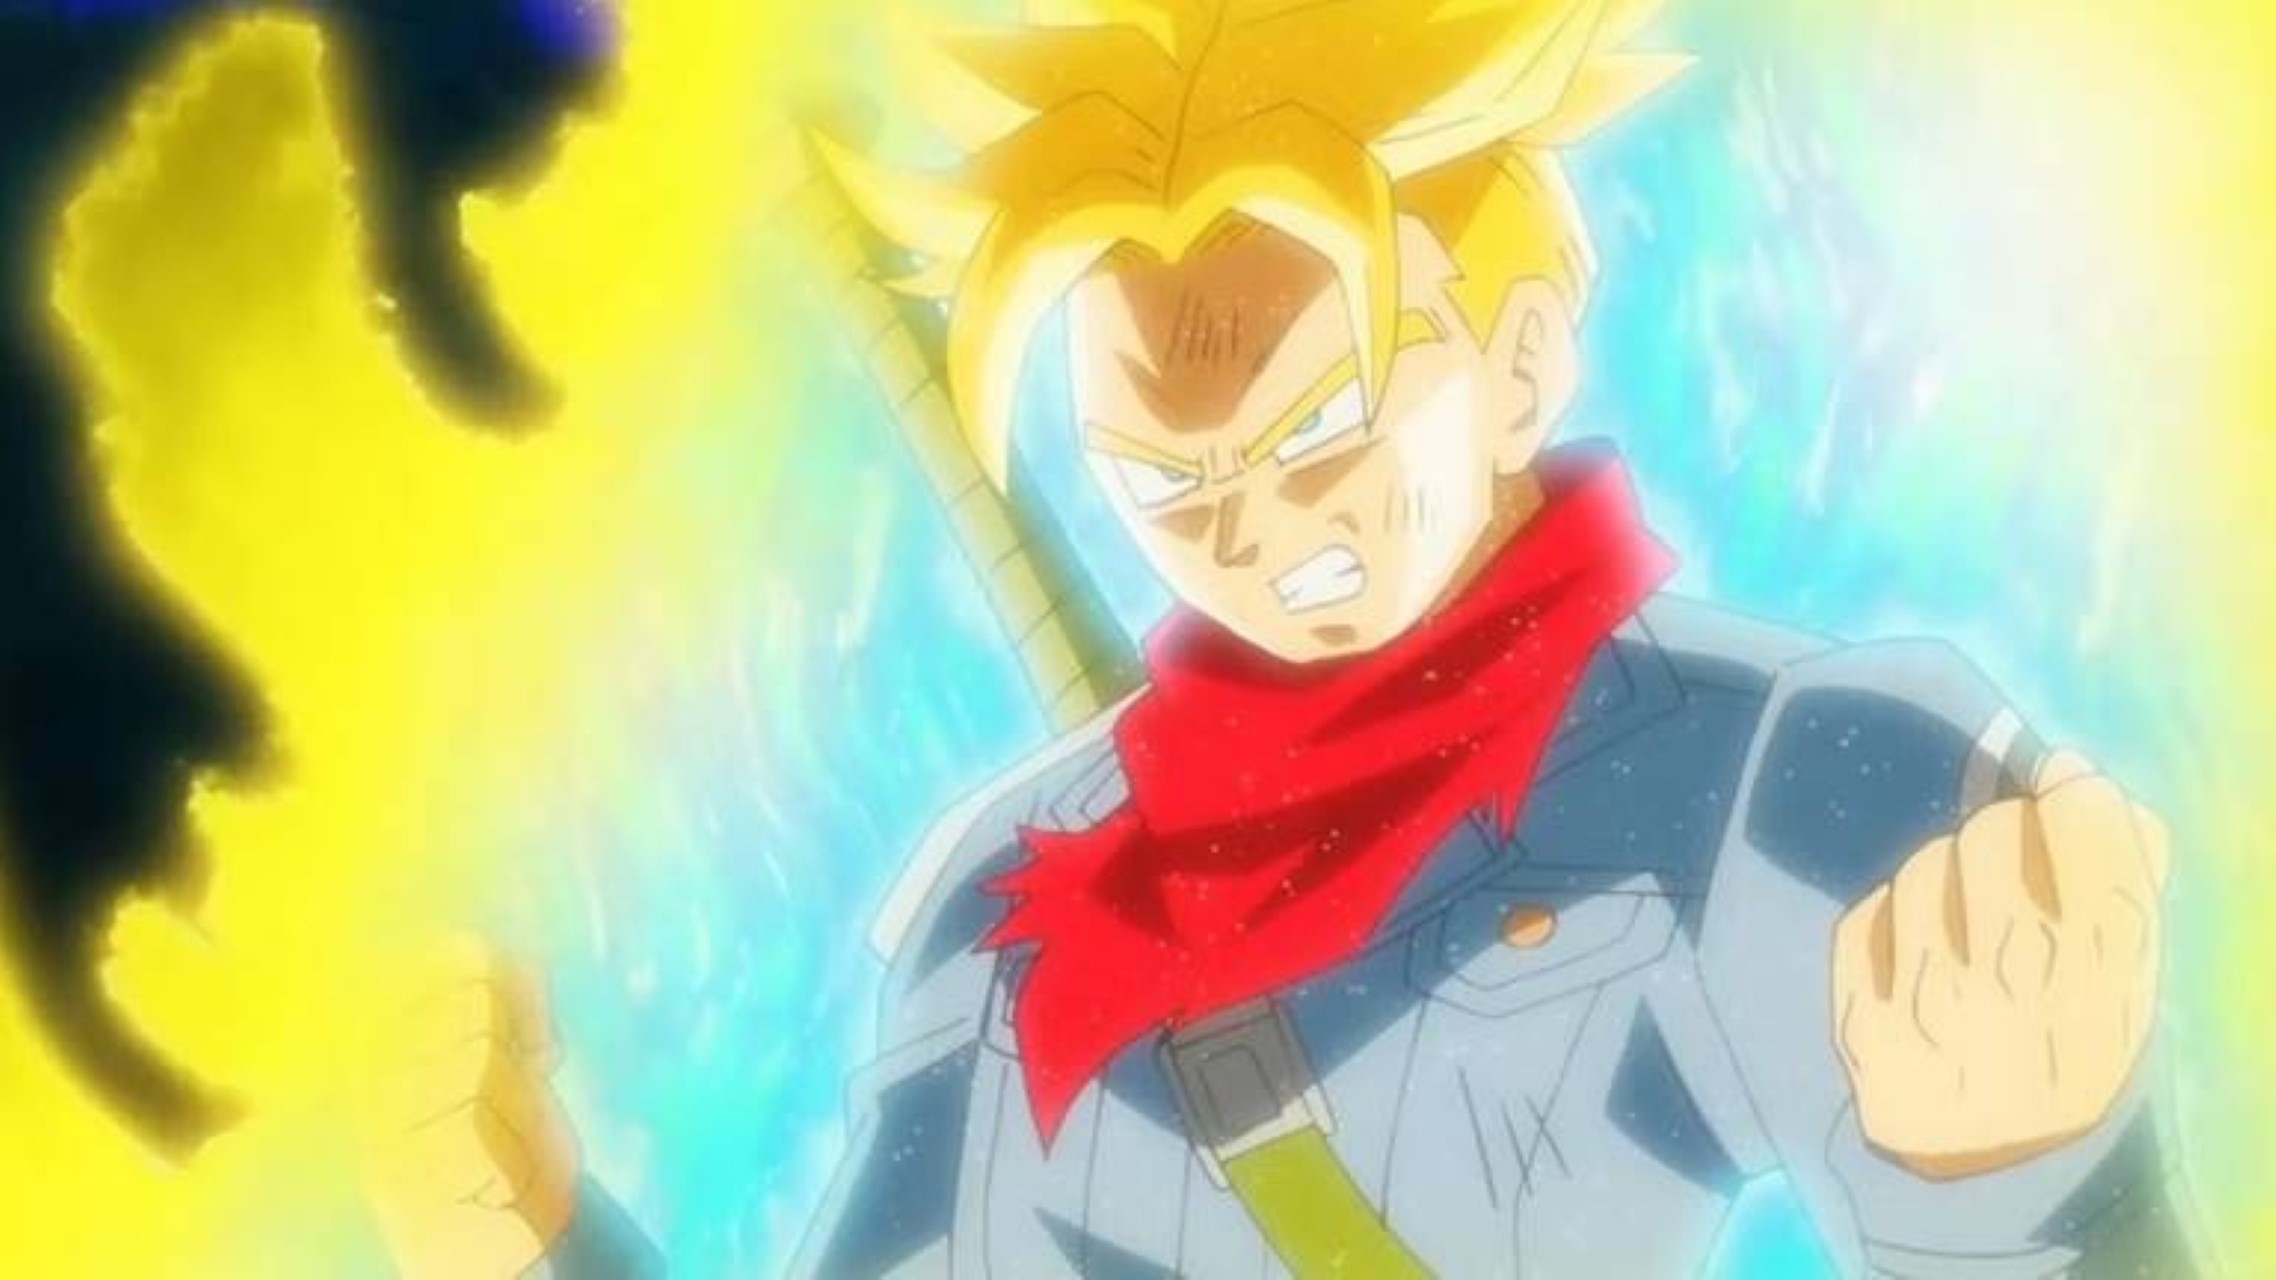 Dragon Ball Z - Em qual episódio Trunks do Futuro é apresentado? - Critical  Hits